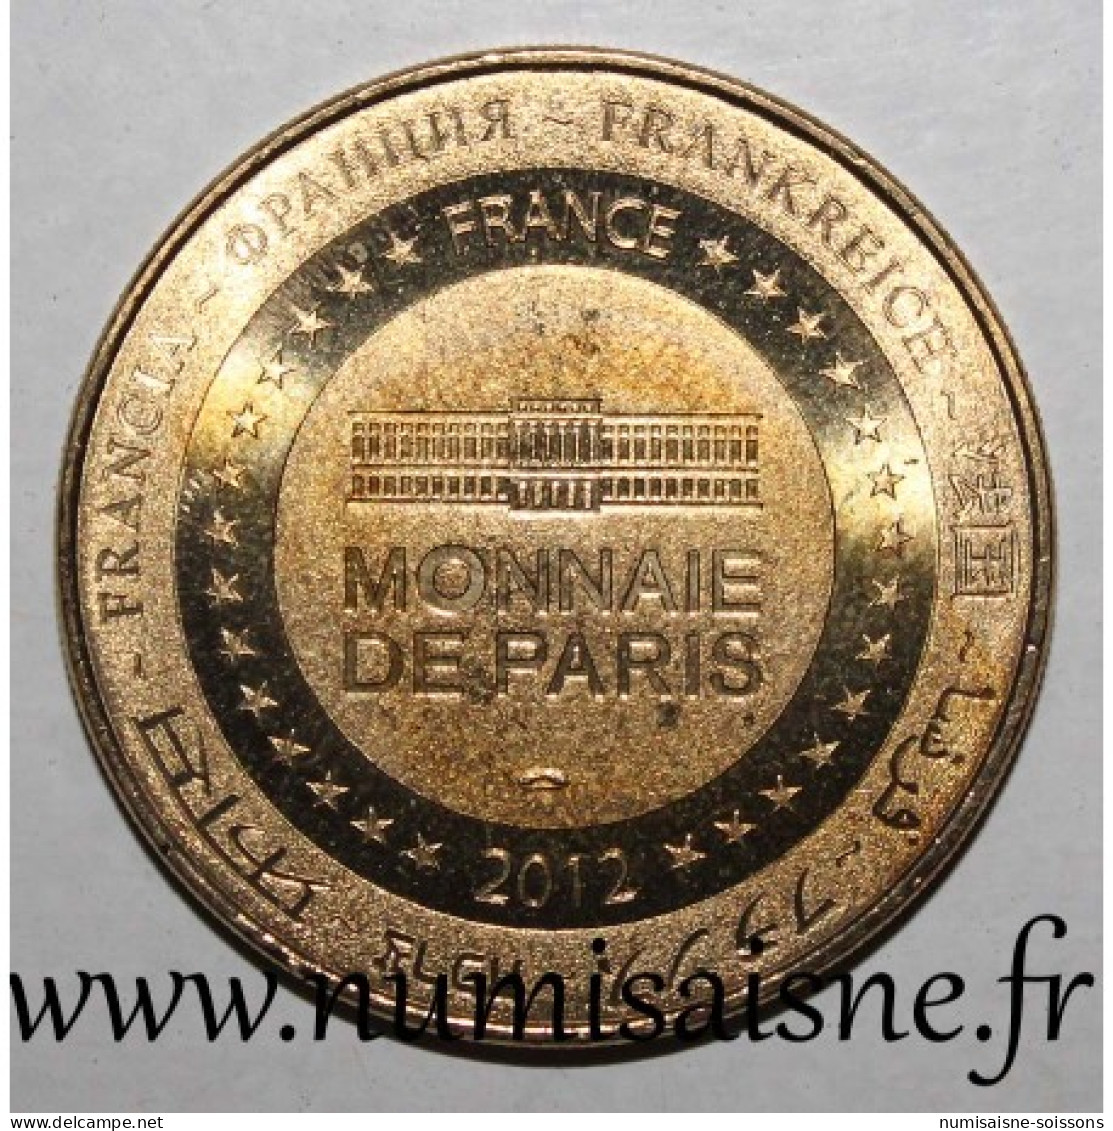 74 - LES GETS - MUSIQUE MÉCANIQUE - Monnaie De Paris - 2012 - 2012